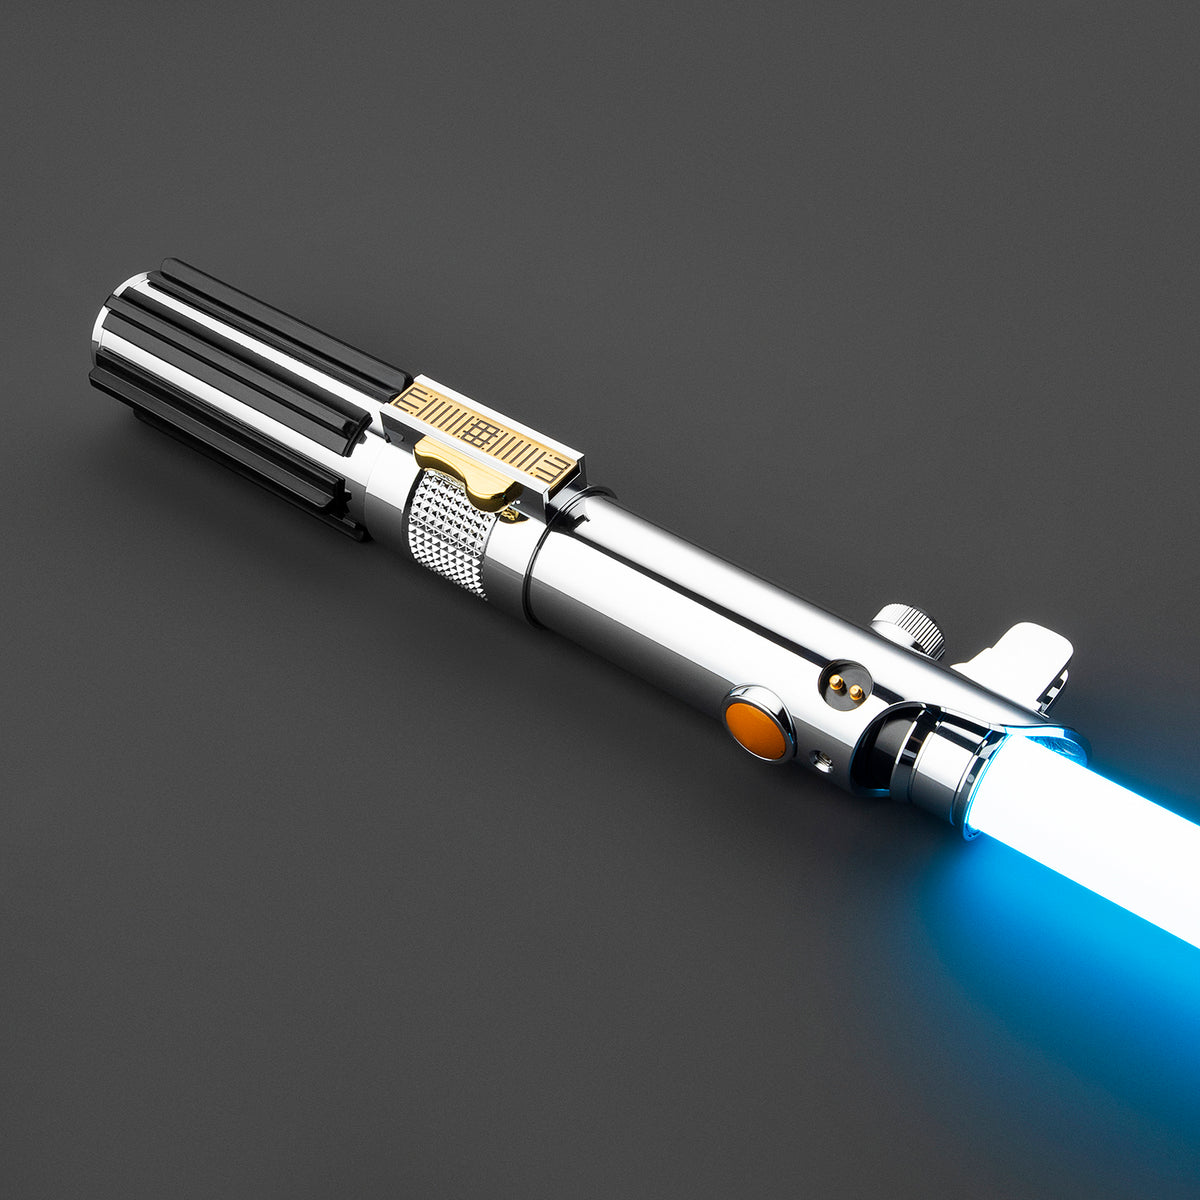 Star Wars Anakin Lightsaber Immersion Blender